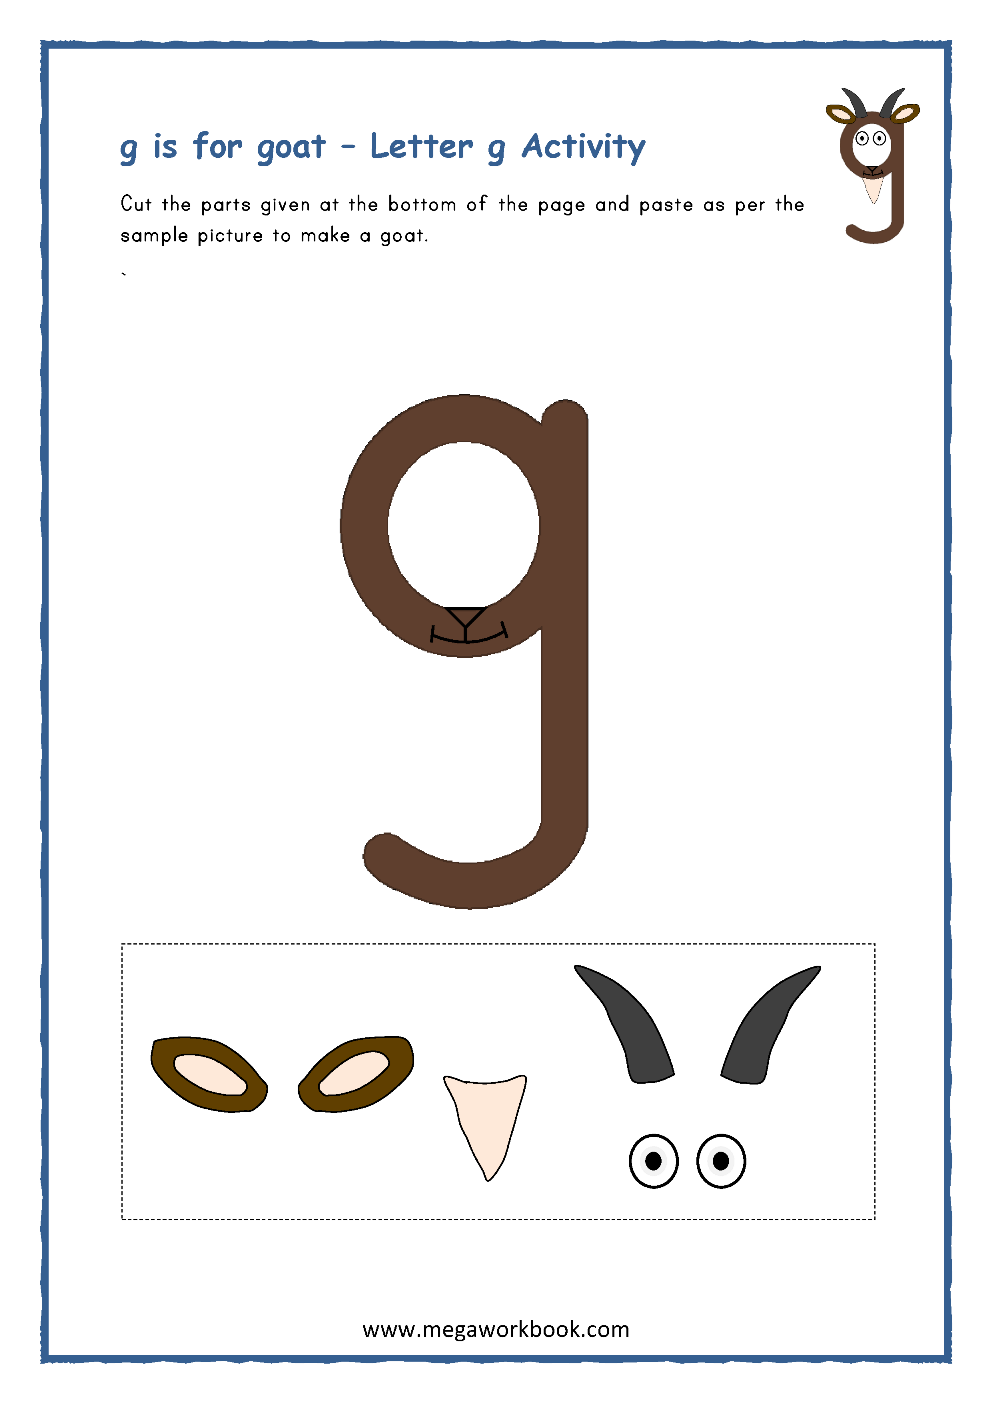 letter g activities letter g worksheets letter g crafts for preschoolers letter g printables megaworkbook